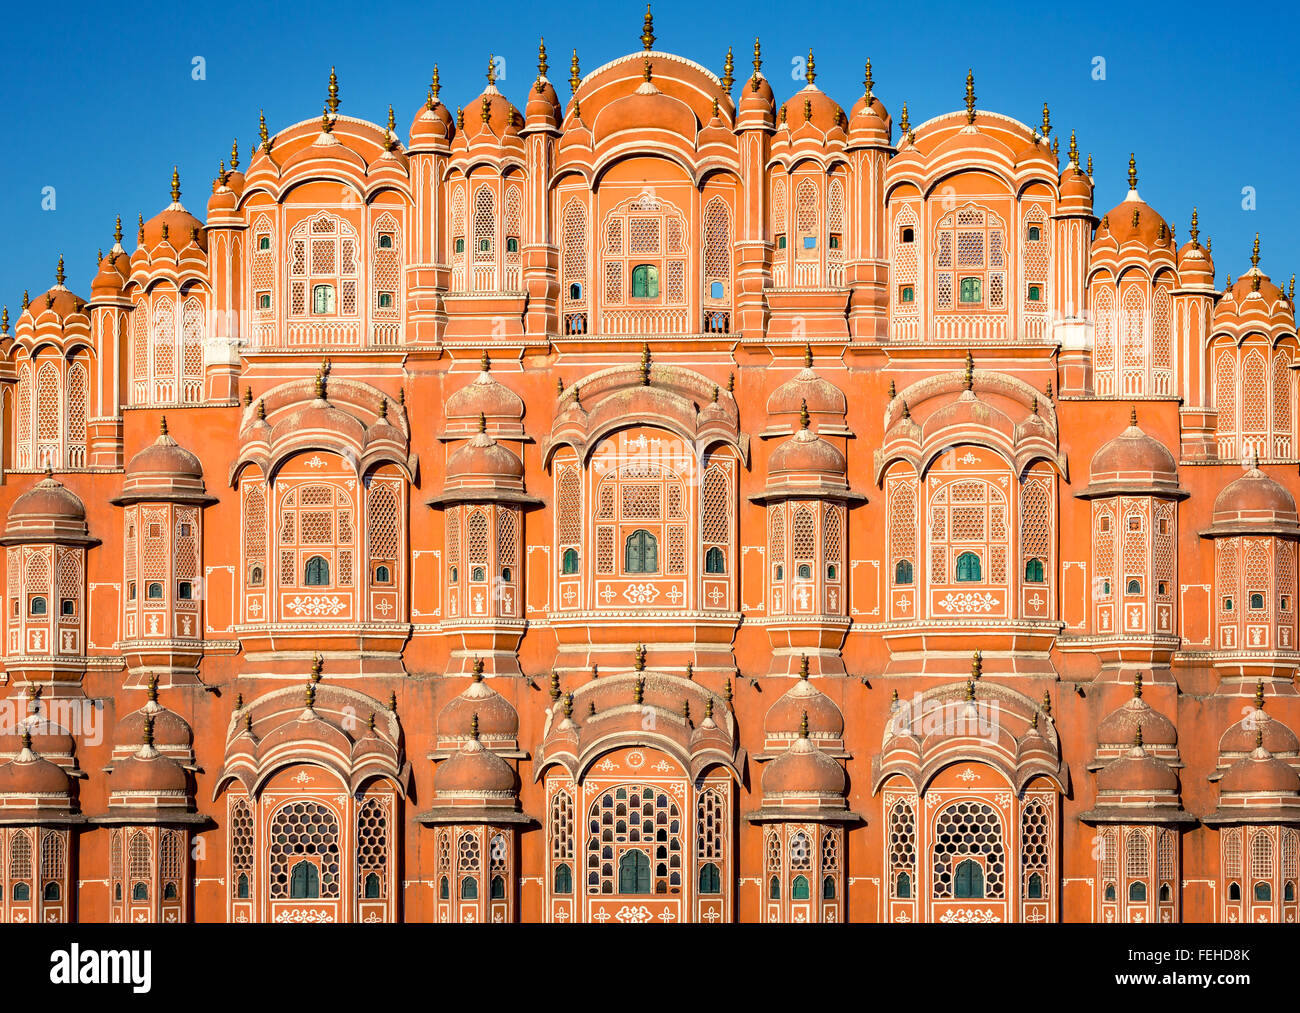 Fassade des Hawa Mahal, Palast der Winde, Jaipur, Rajasthan, Indien Stockfoto